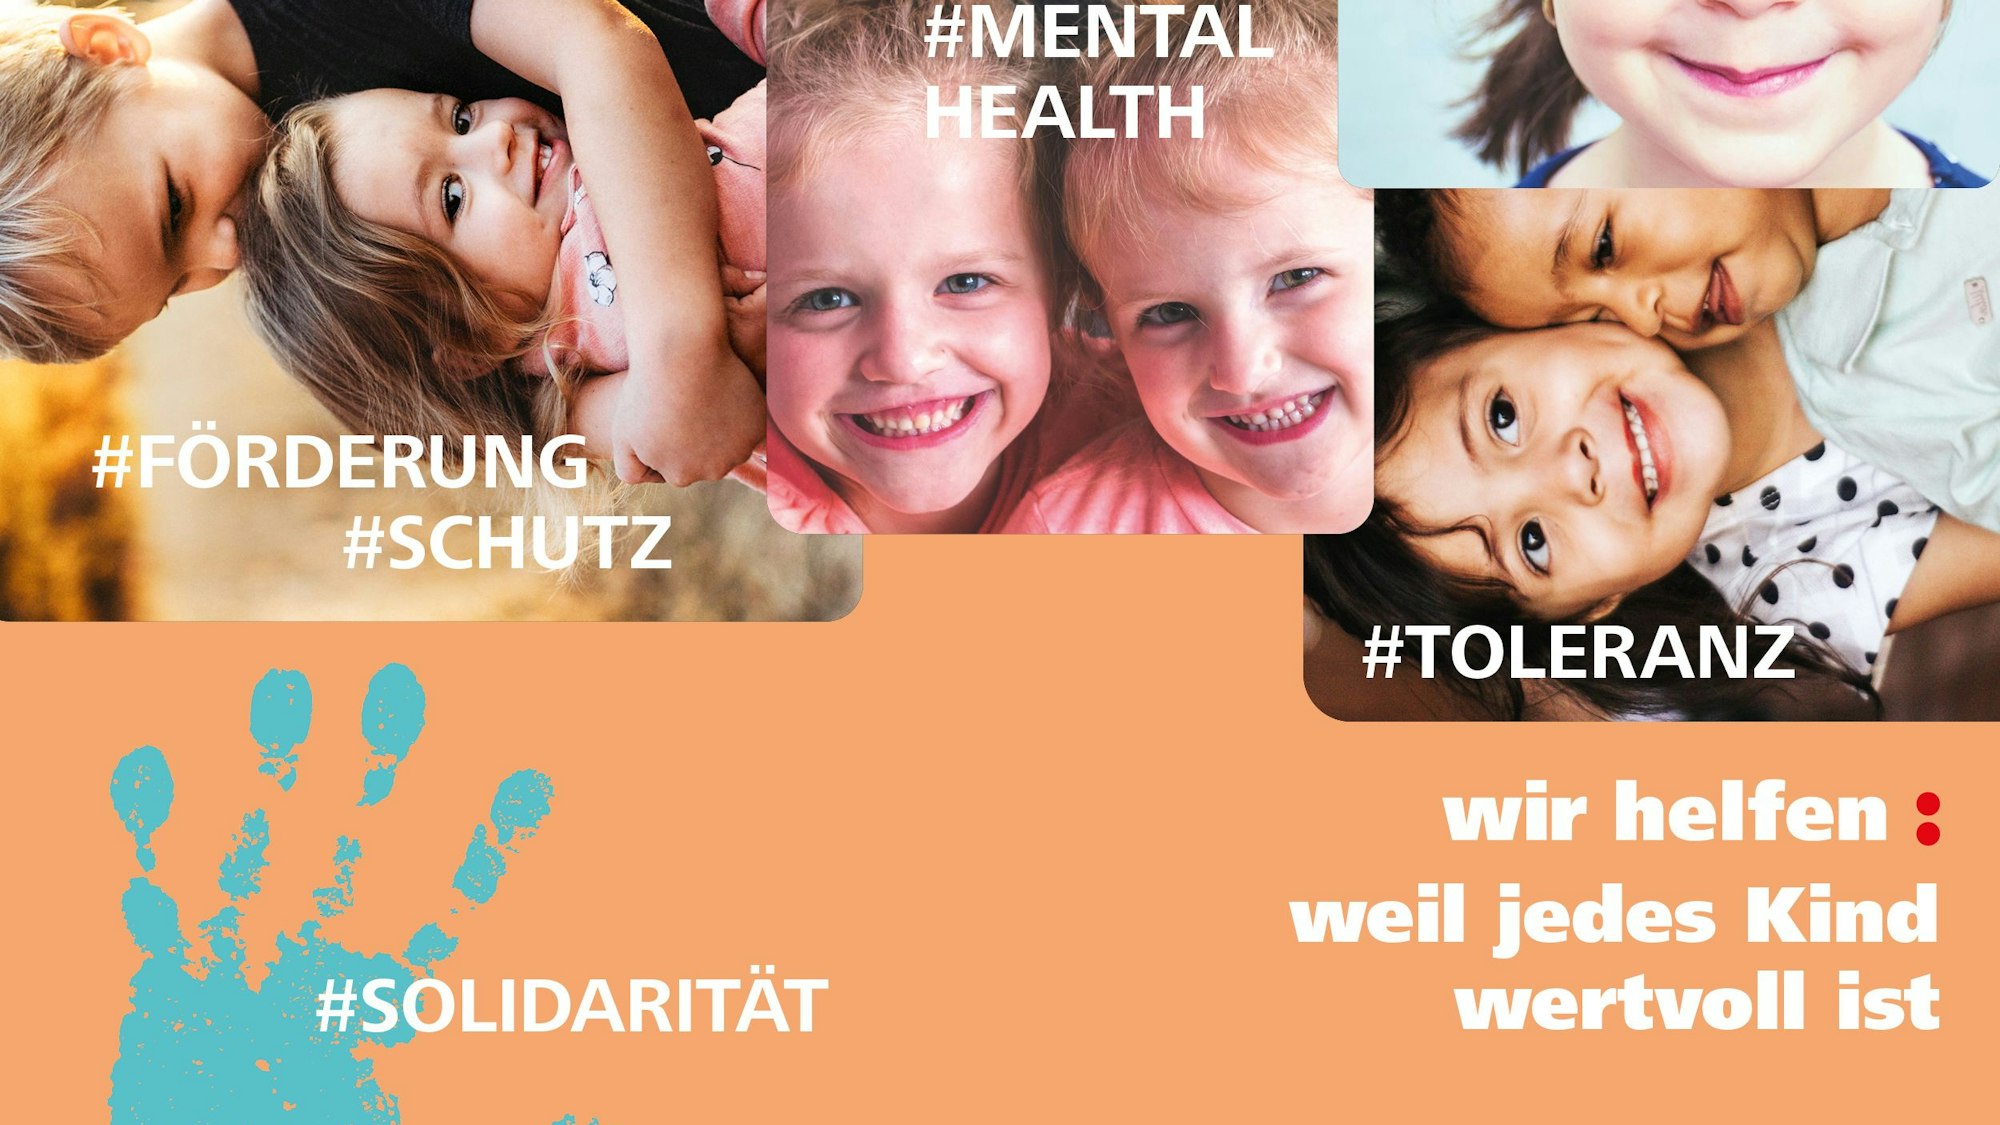 Der aktuelle„ wir helfen“-Flyer zeigt Fotos von Kinder-Gesichtern und die Hashtags # Mental Health, #Toleranz, #Förderung & Schutz und #Solidarität